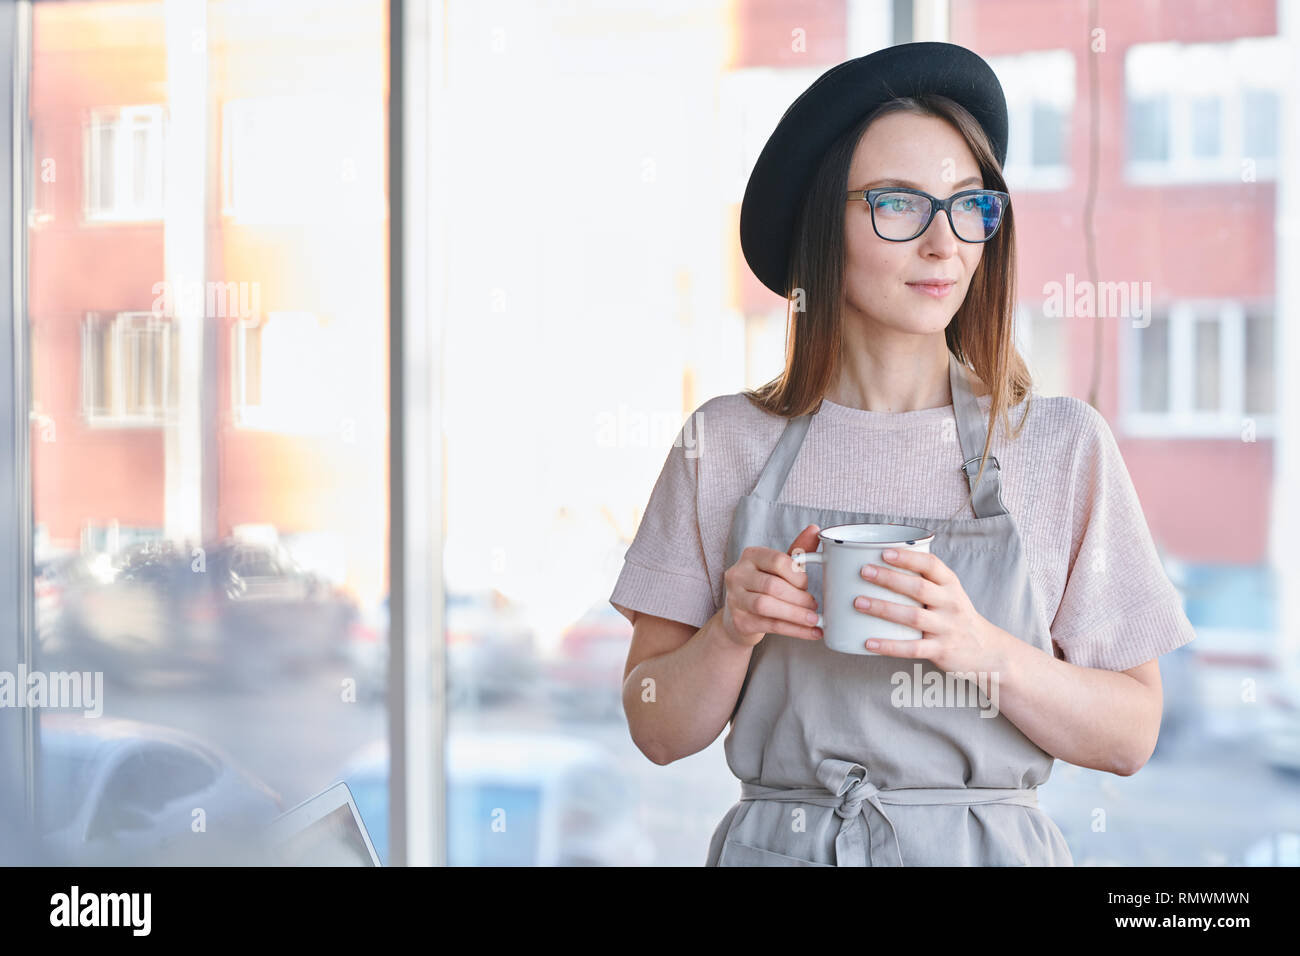 Jolie jeune femme sereine avec chapeau, lunettes et vêtements de travail prenant le thé ou café à partir de mug en studio Banque D'Images